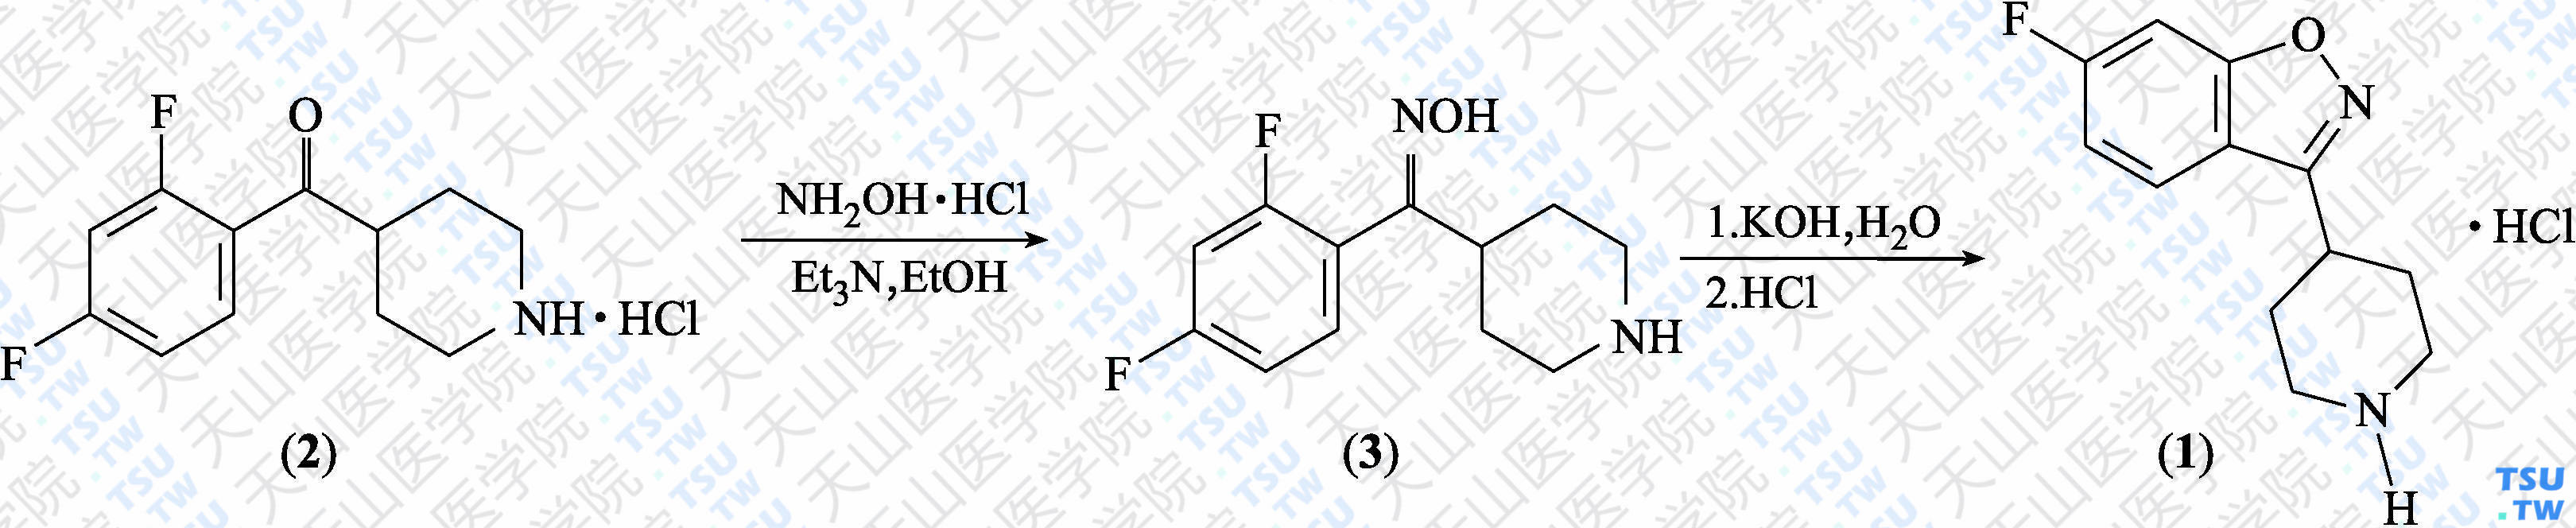 6-氟-3-（4-哌啶基）-1，2-苯并异噁唑盐酸盐（分子式：C<sub>12</sub>H<sub>13</sub>N<sub>2</sub>OF·HCl）的合成方法路线及其结构式